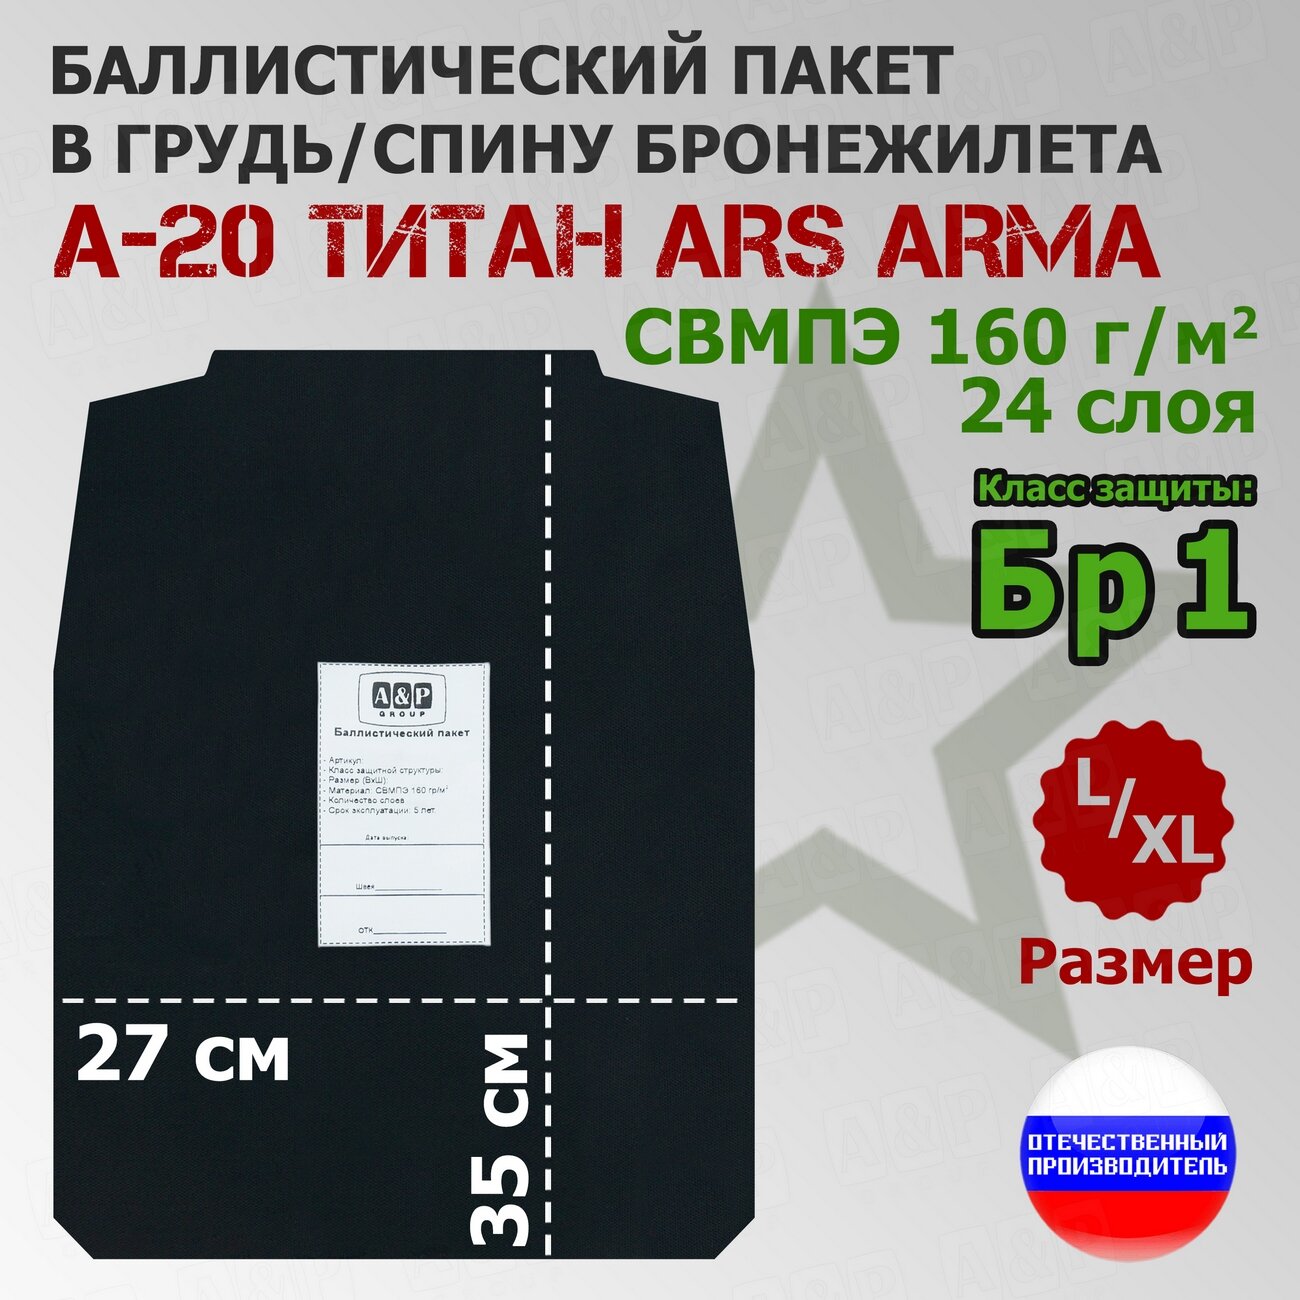 Баллистический пакет в грудь/спину бронежилета А-20 Титан Ars Arma (размер L/XL). Класс защитной структуры Бр 1.